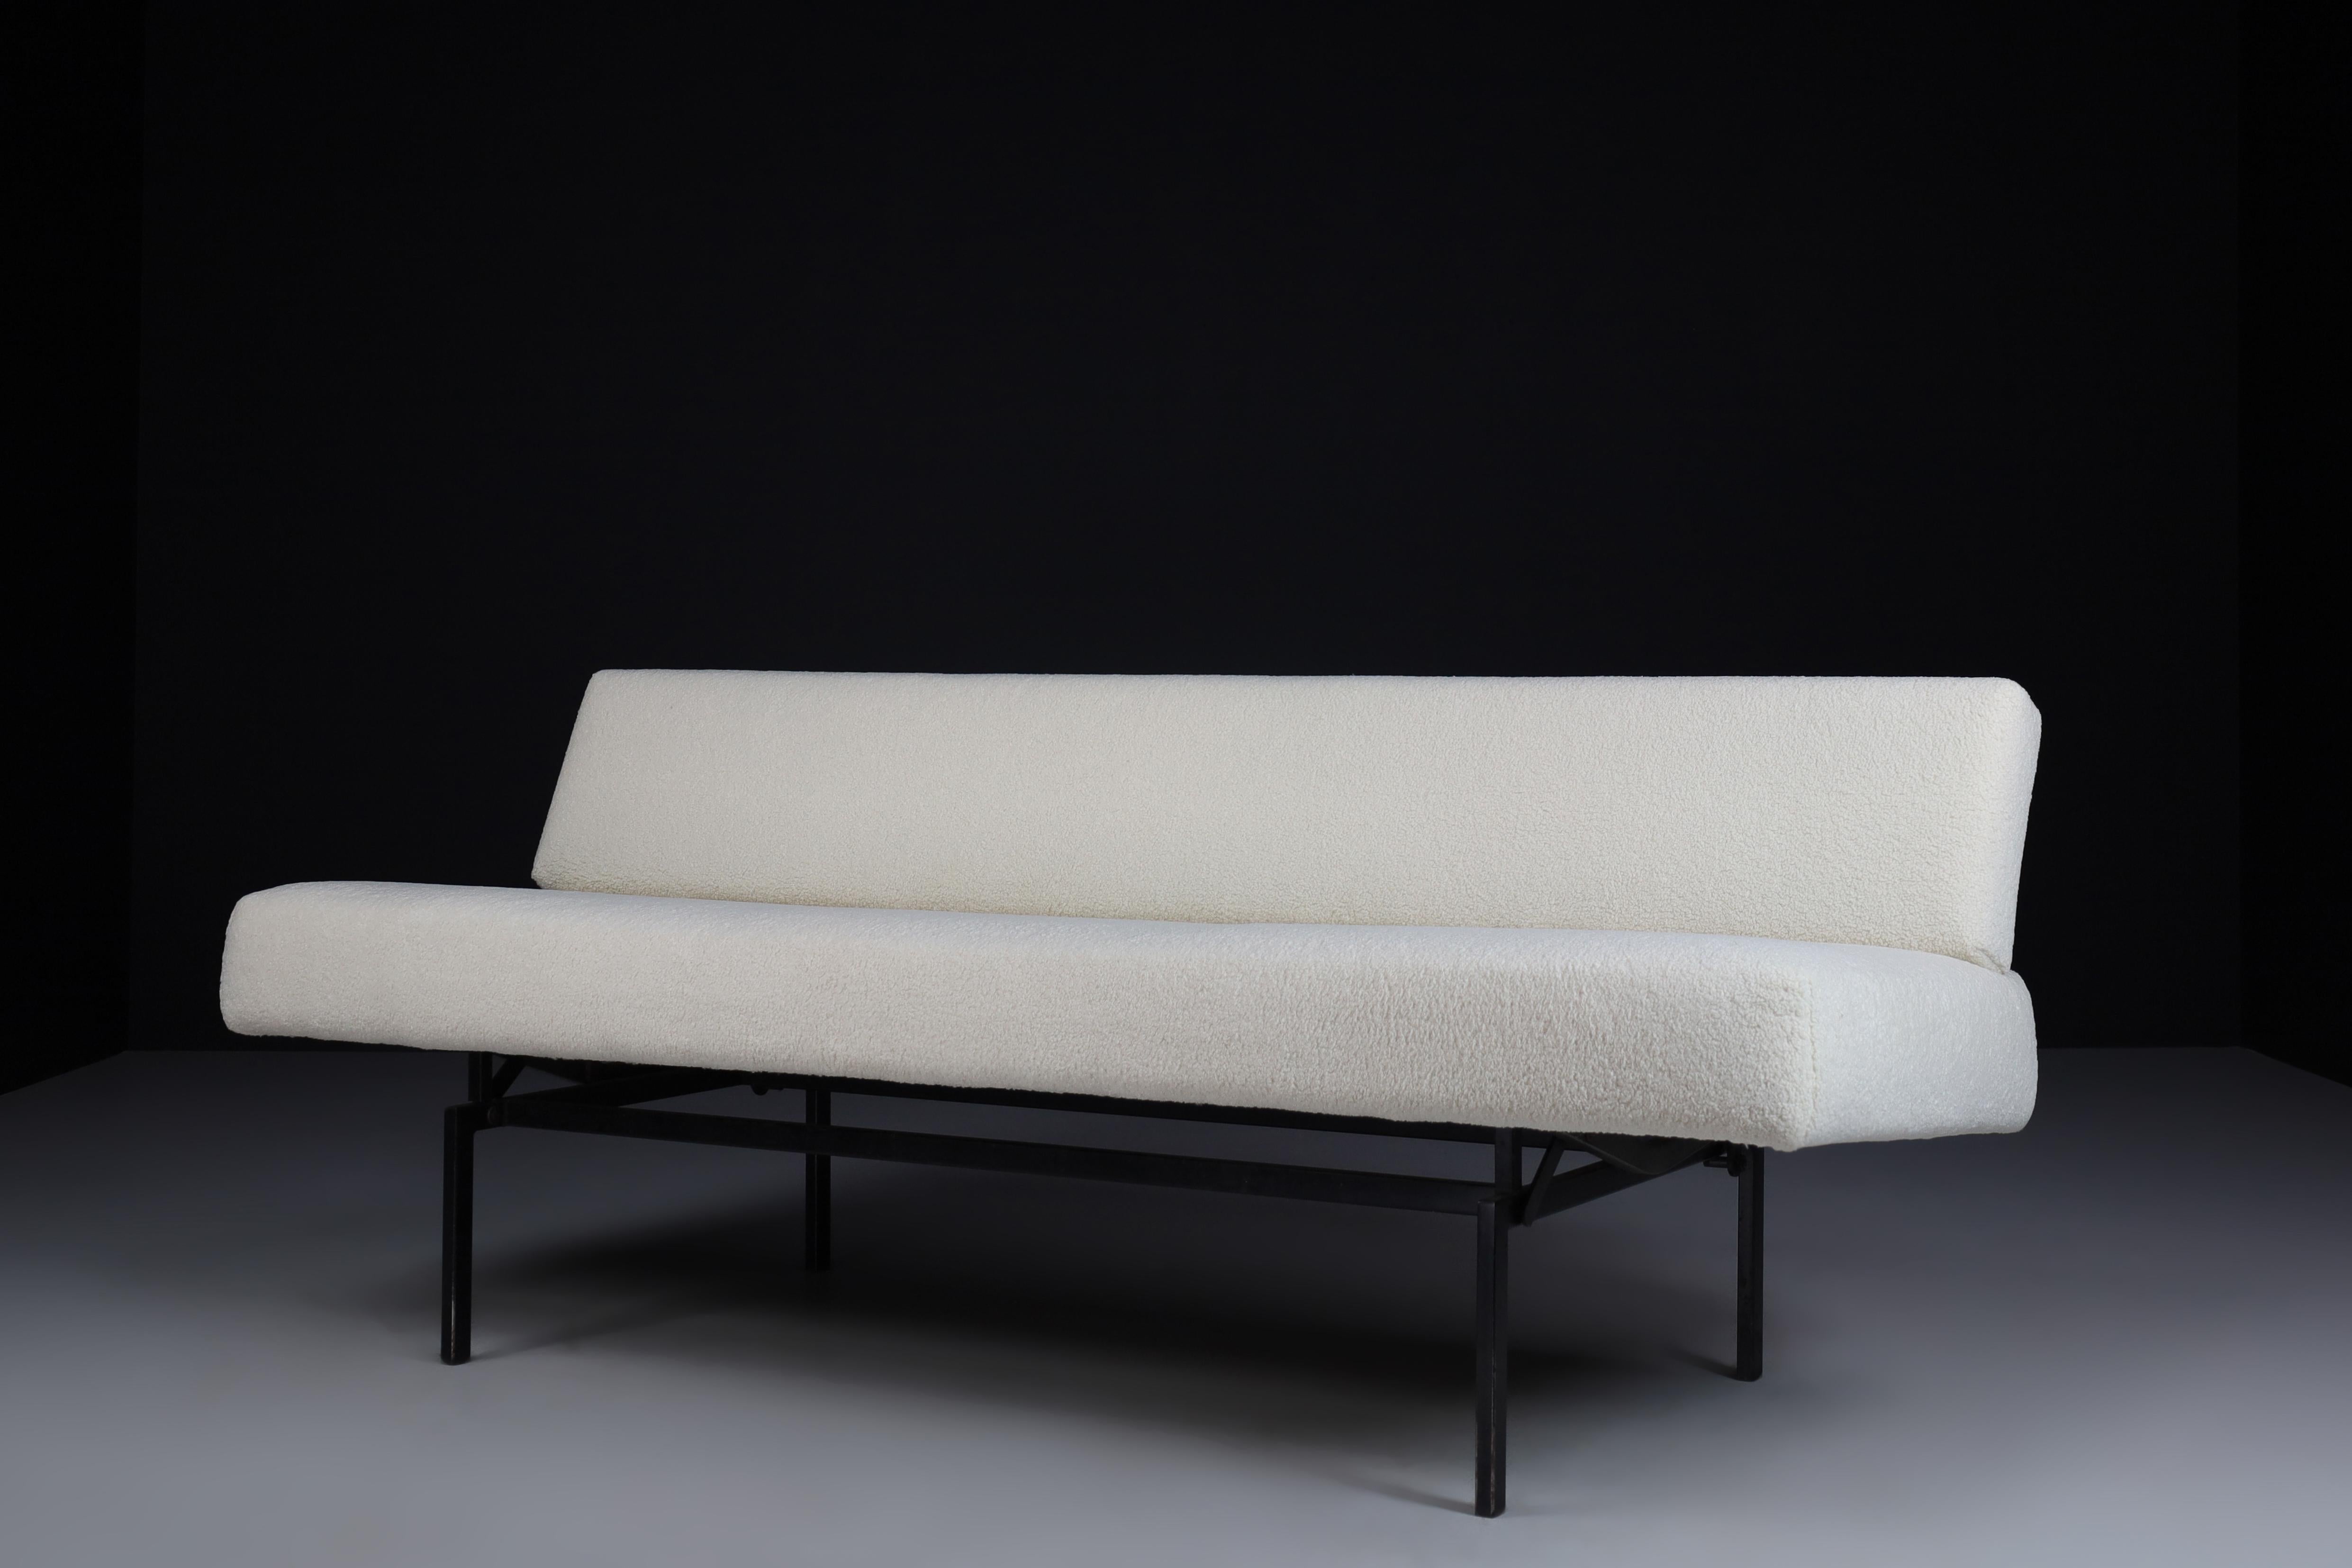 Sofá minimalista diseñado por Martin Visser para 't Spectrum y recién retapizado con tela de peluche nueva. Estructura en metal.
2 posiciones, se puede convertir en cama. Este sofá minimalista sería un complemento llamativo en cualquier interior,